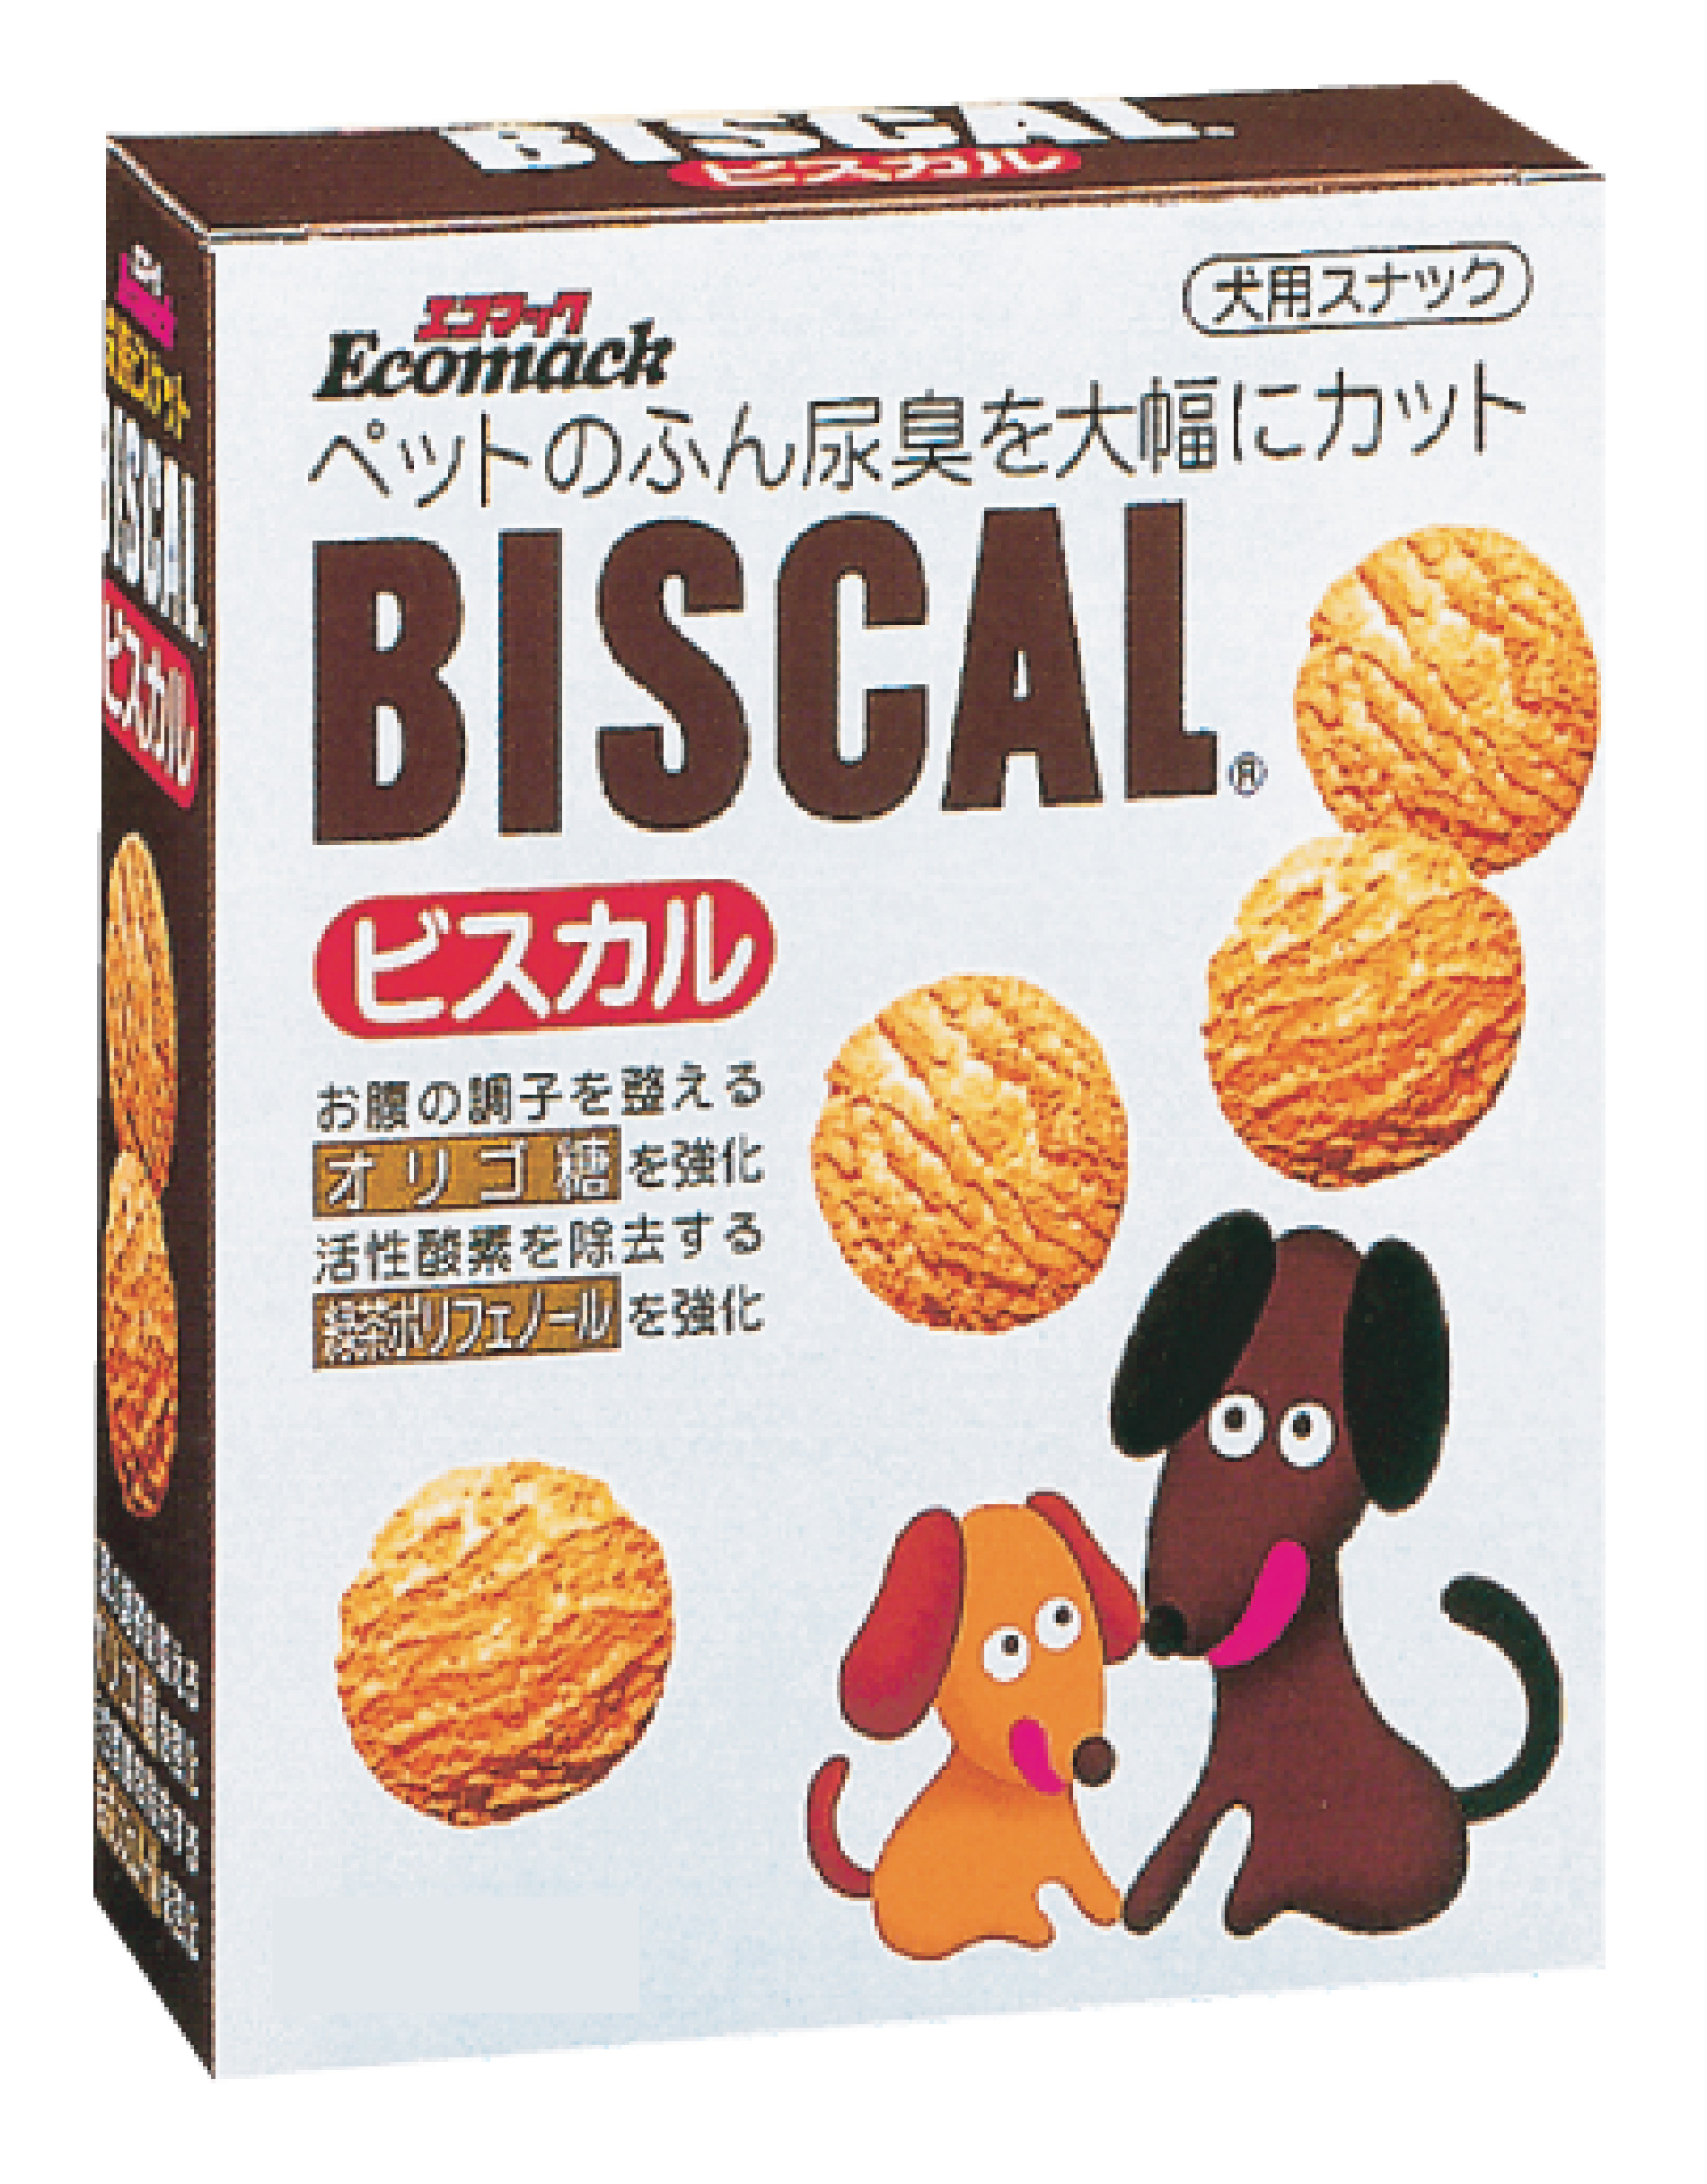 消臭餅乾150g 01137
BISCAL dog cookie-150g